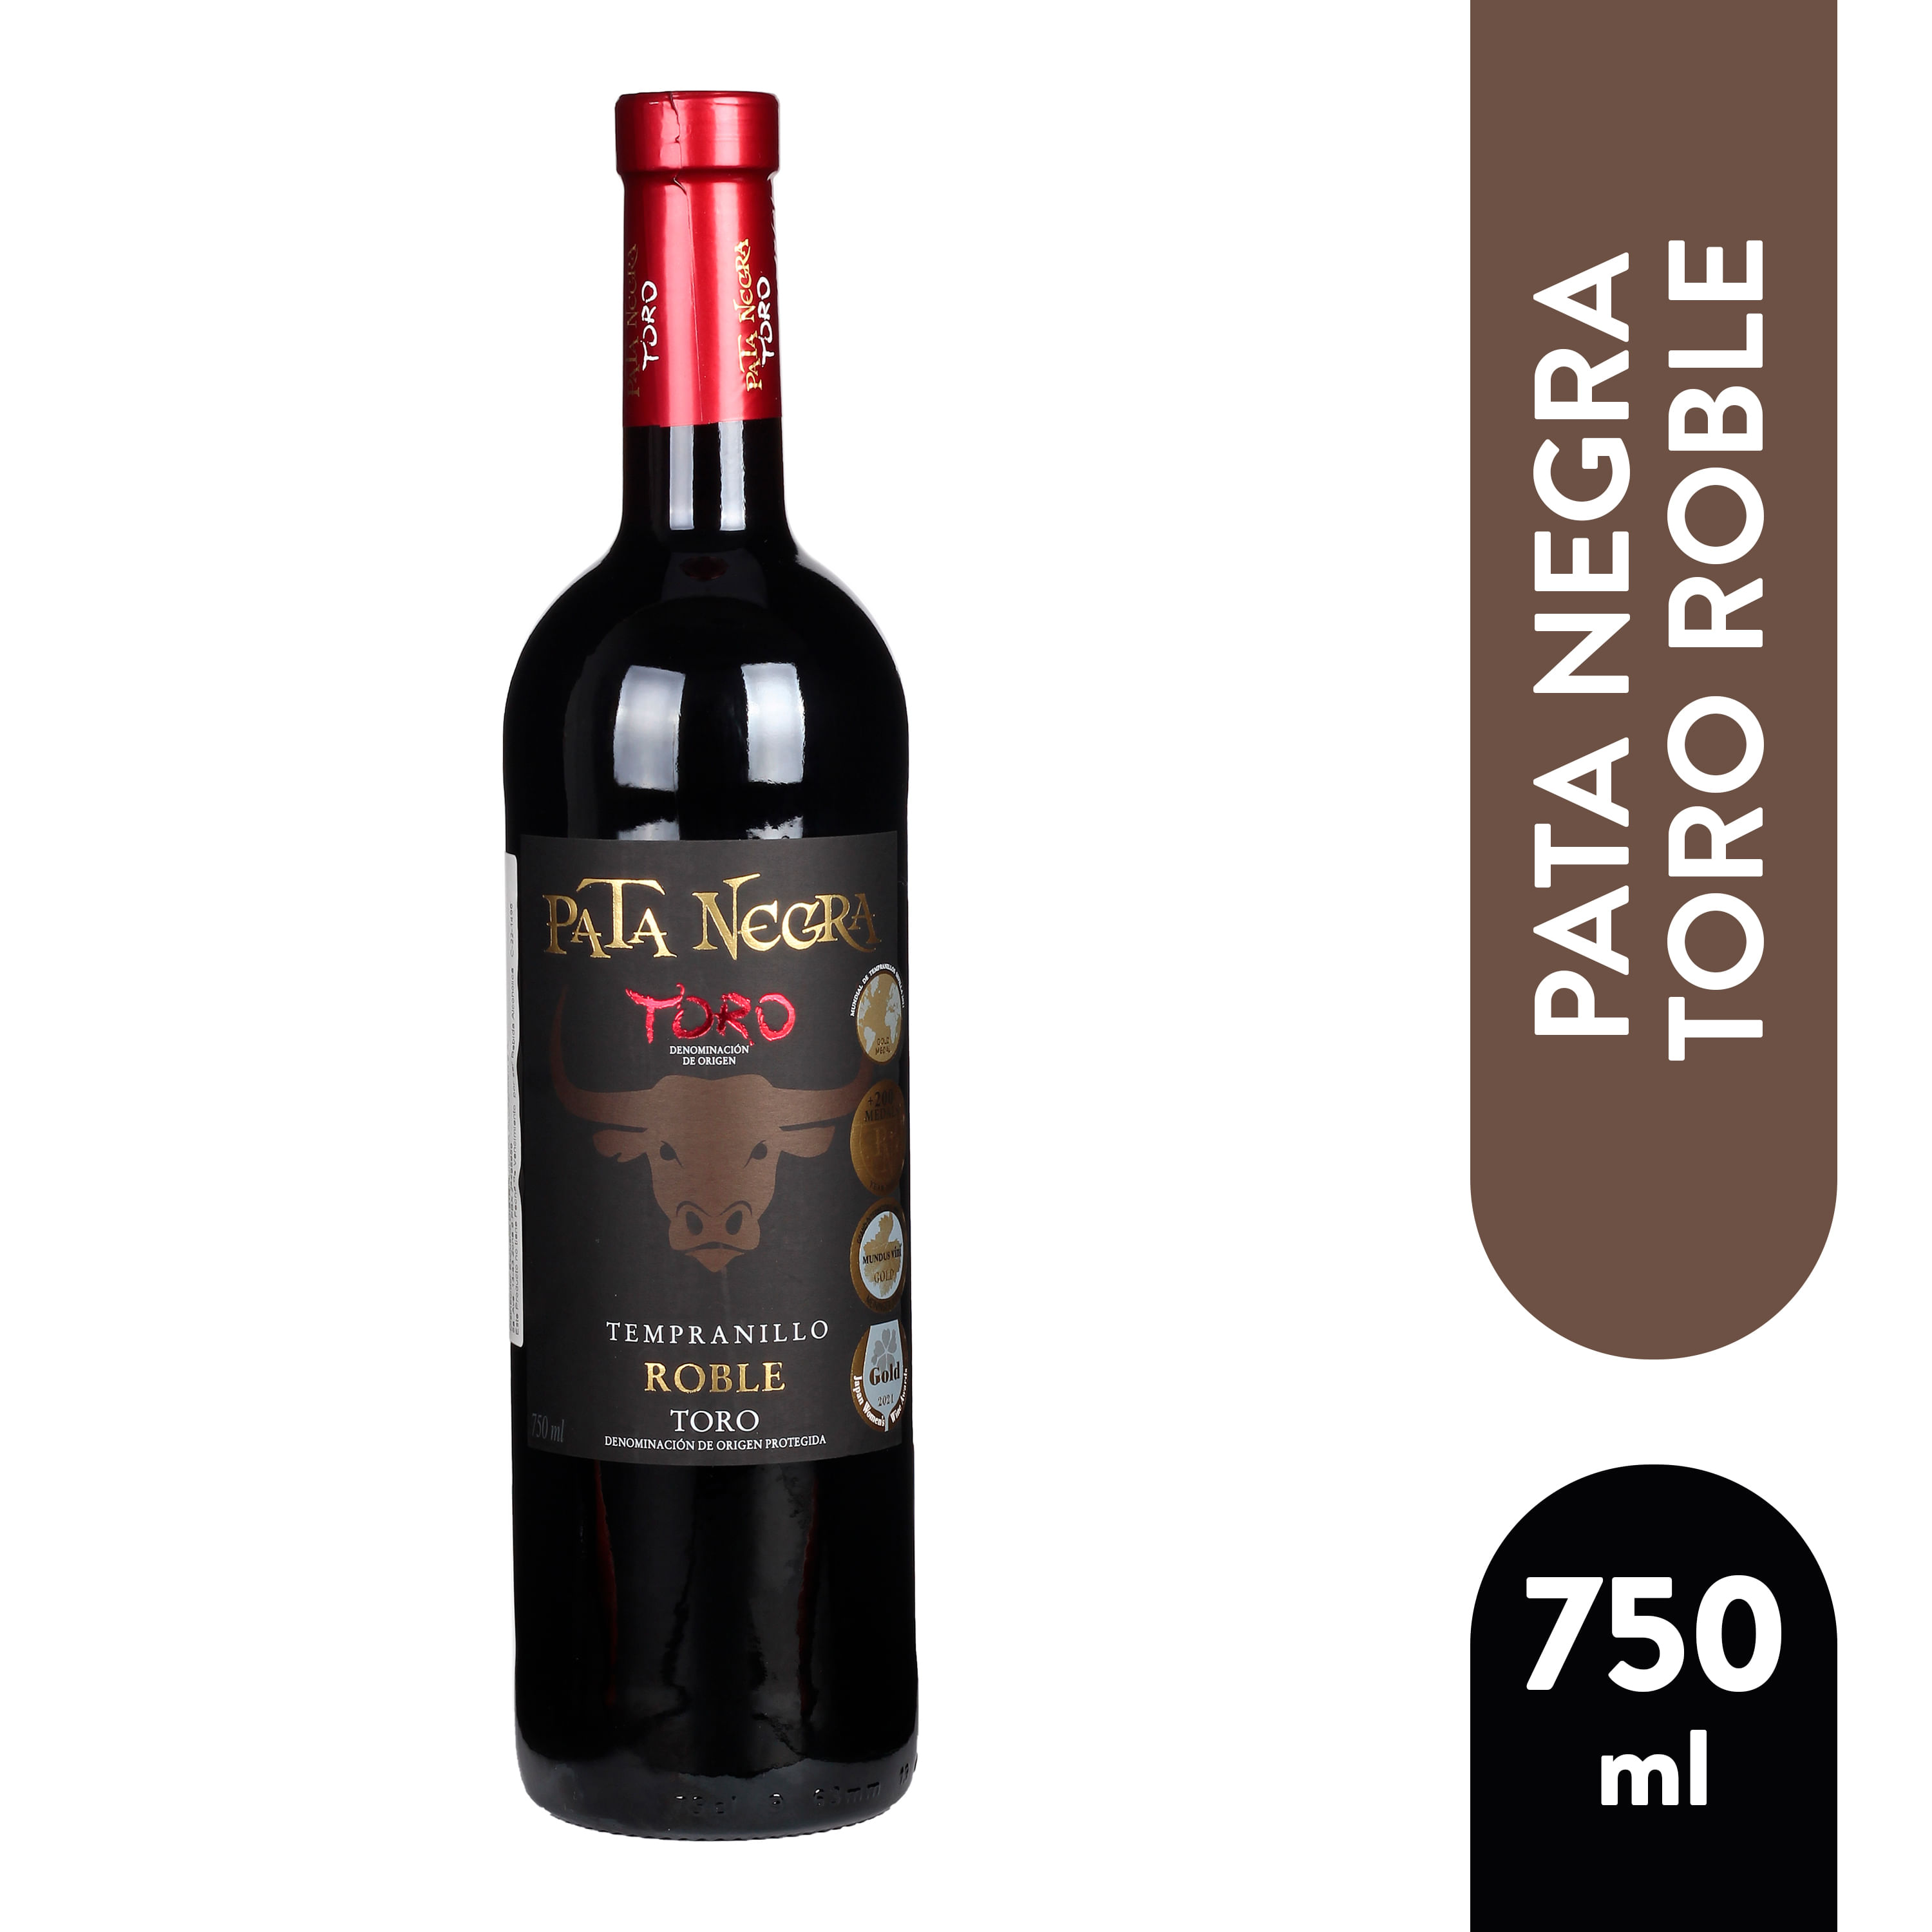 Comprar Vino Pata Negra Roble Tinto - 750ml